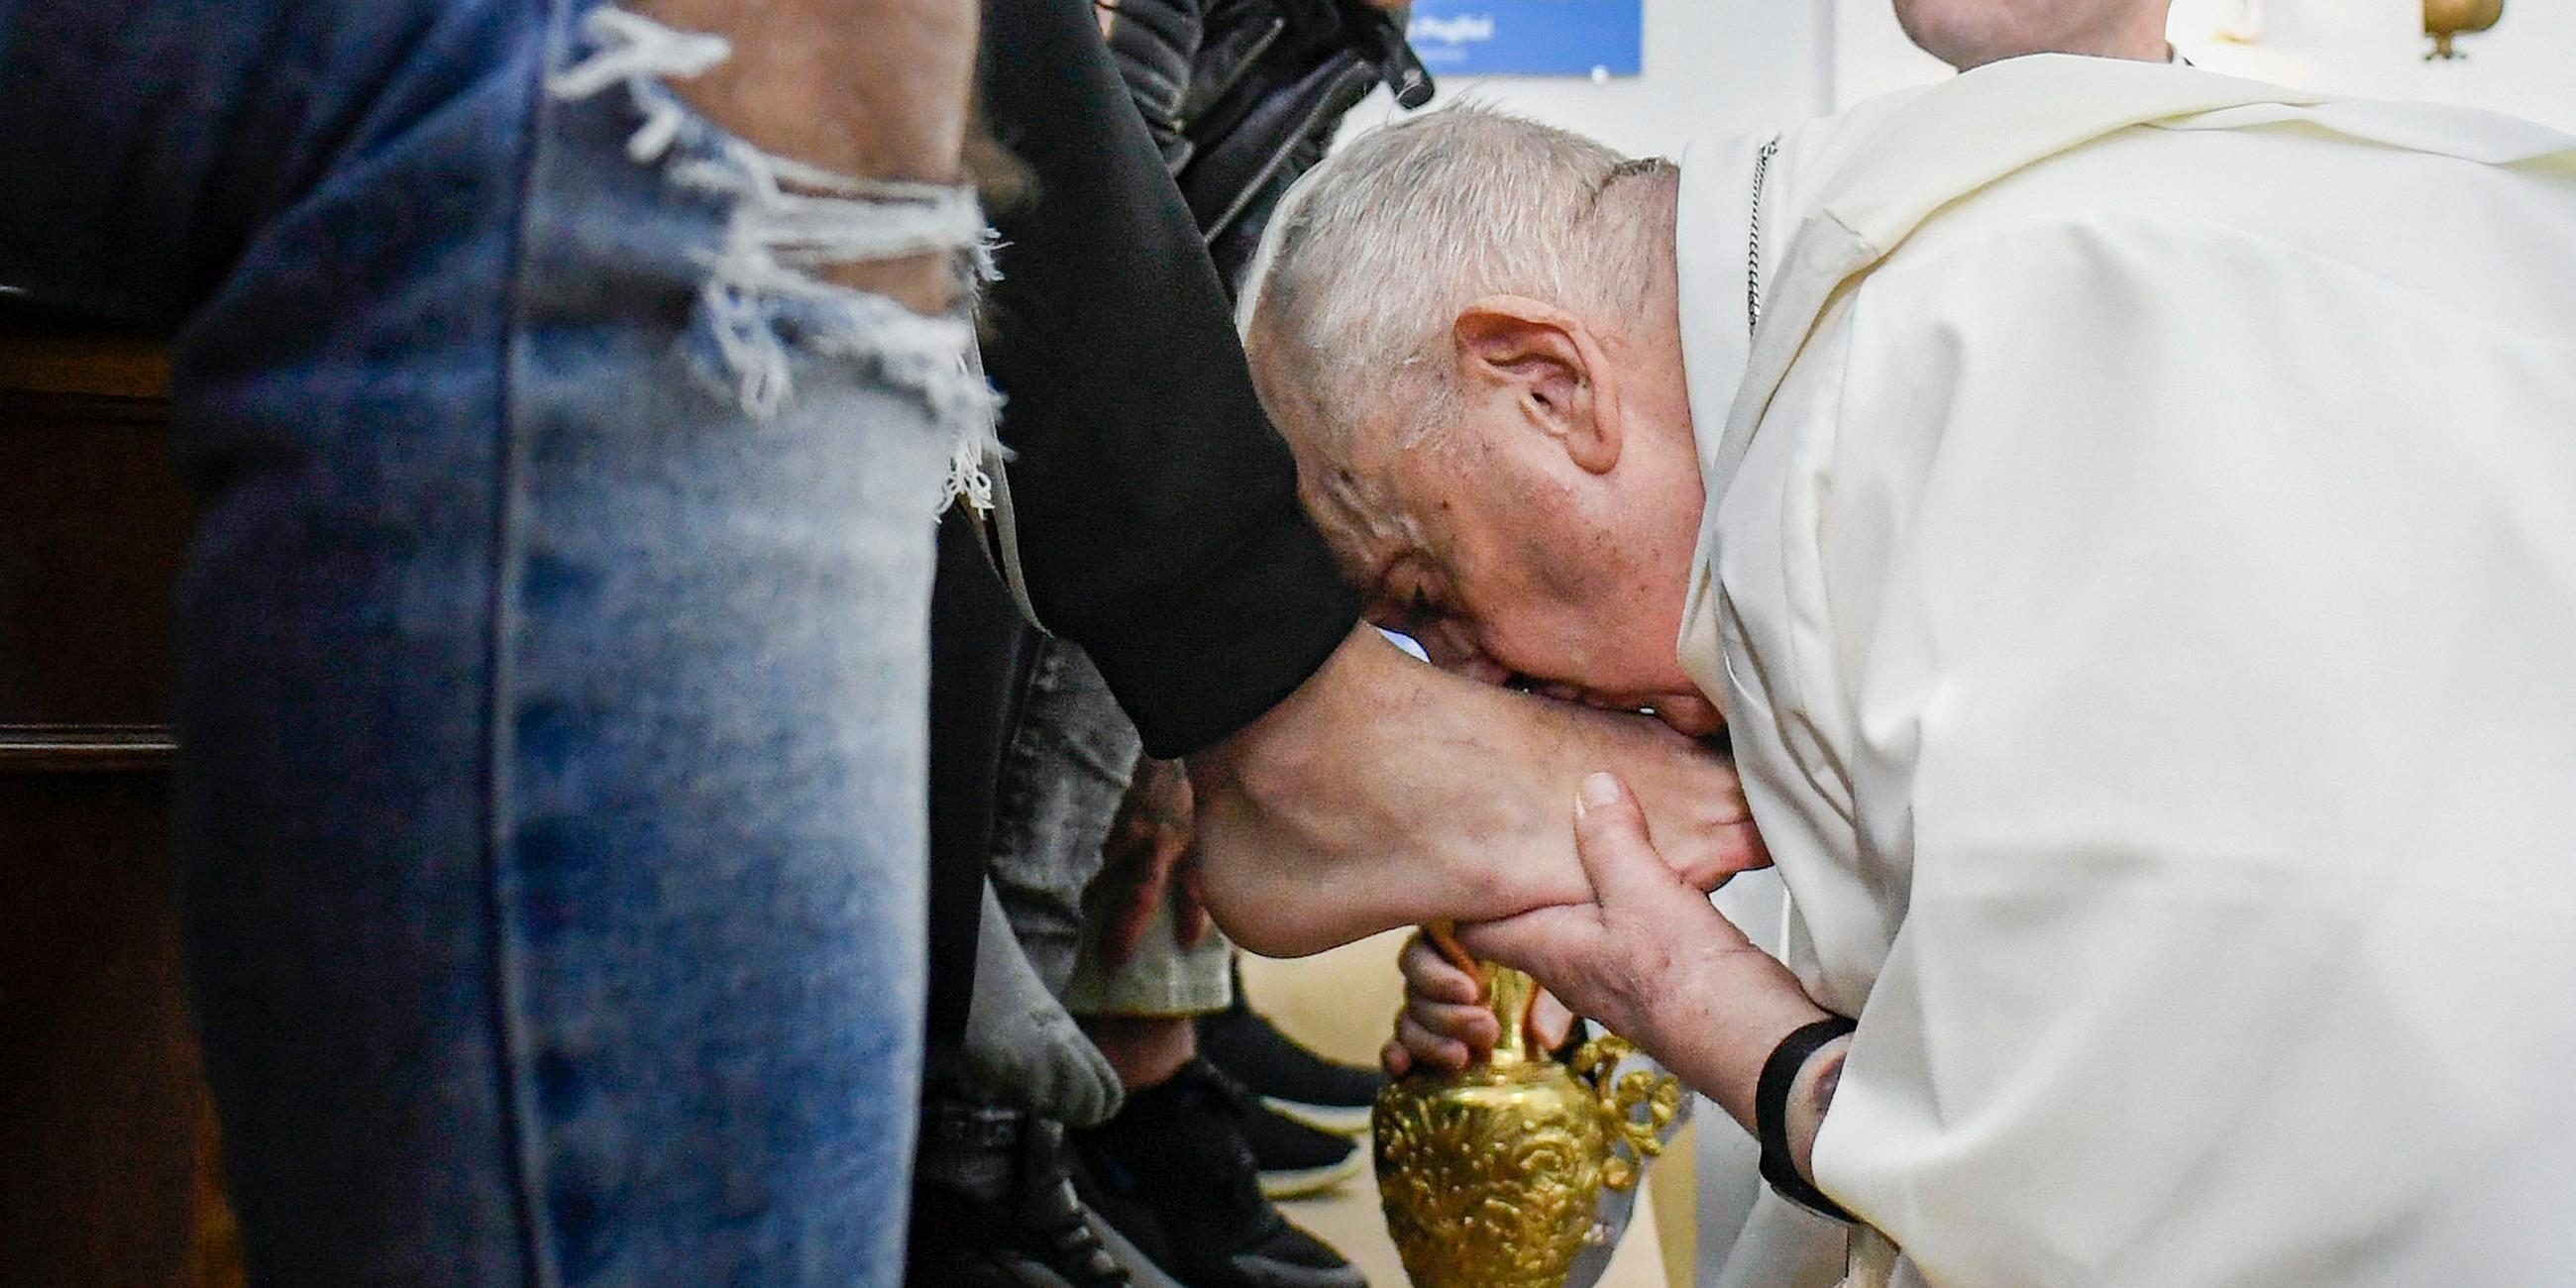 Papst Franziskus küsst Füße bei ritueller Fußwaschung im Gefängnis Casal del Marmo